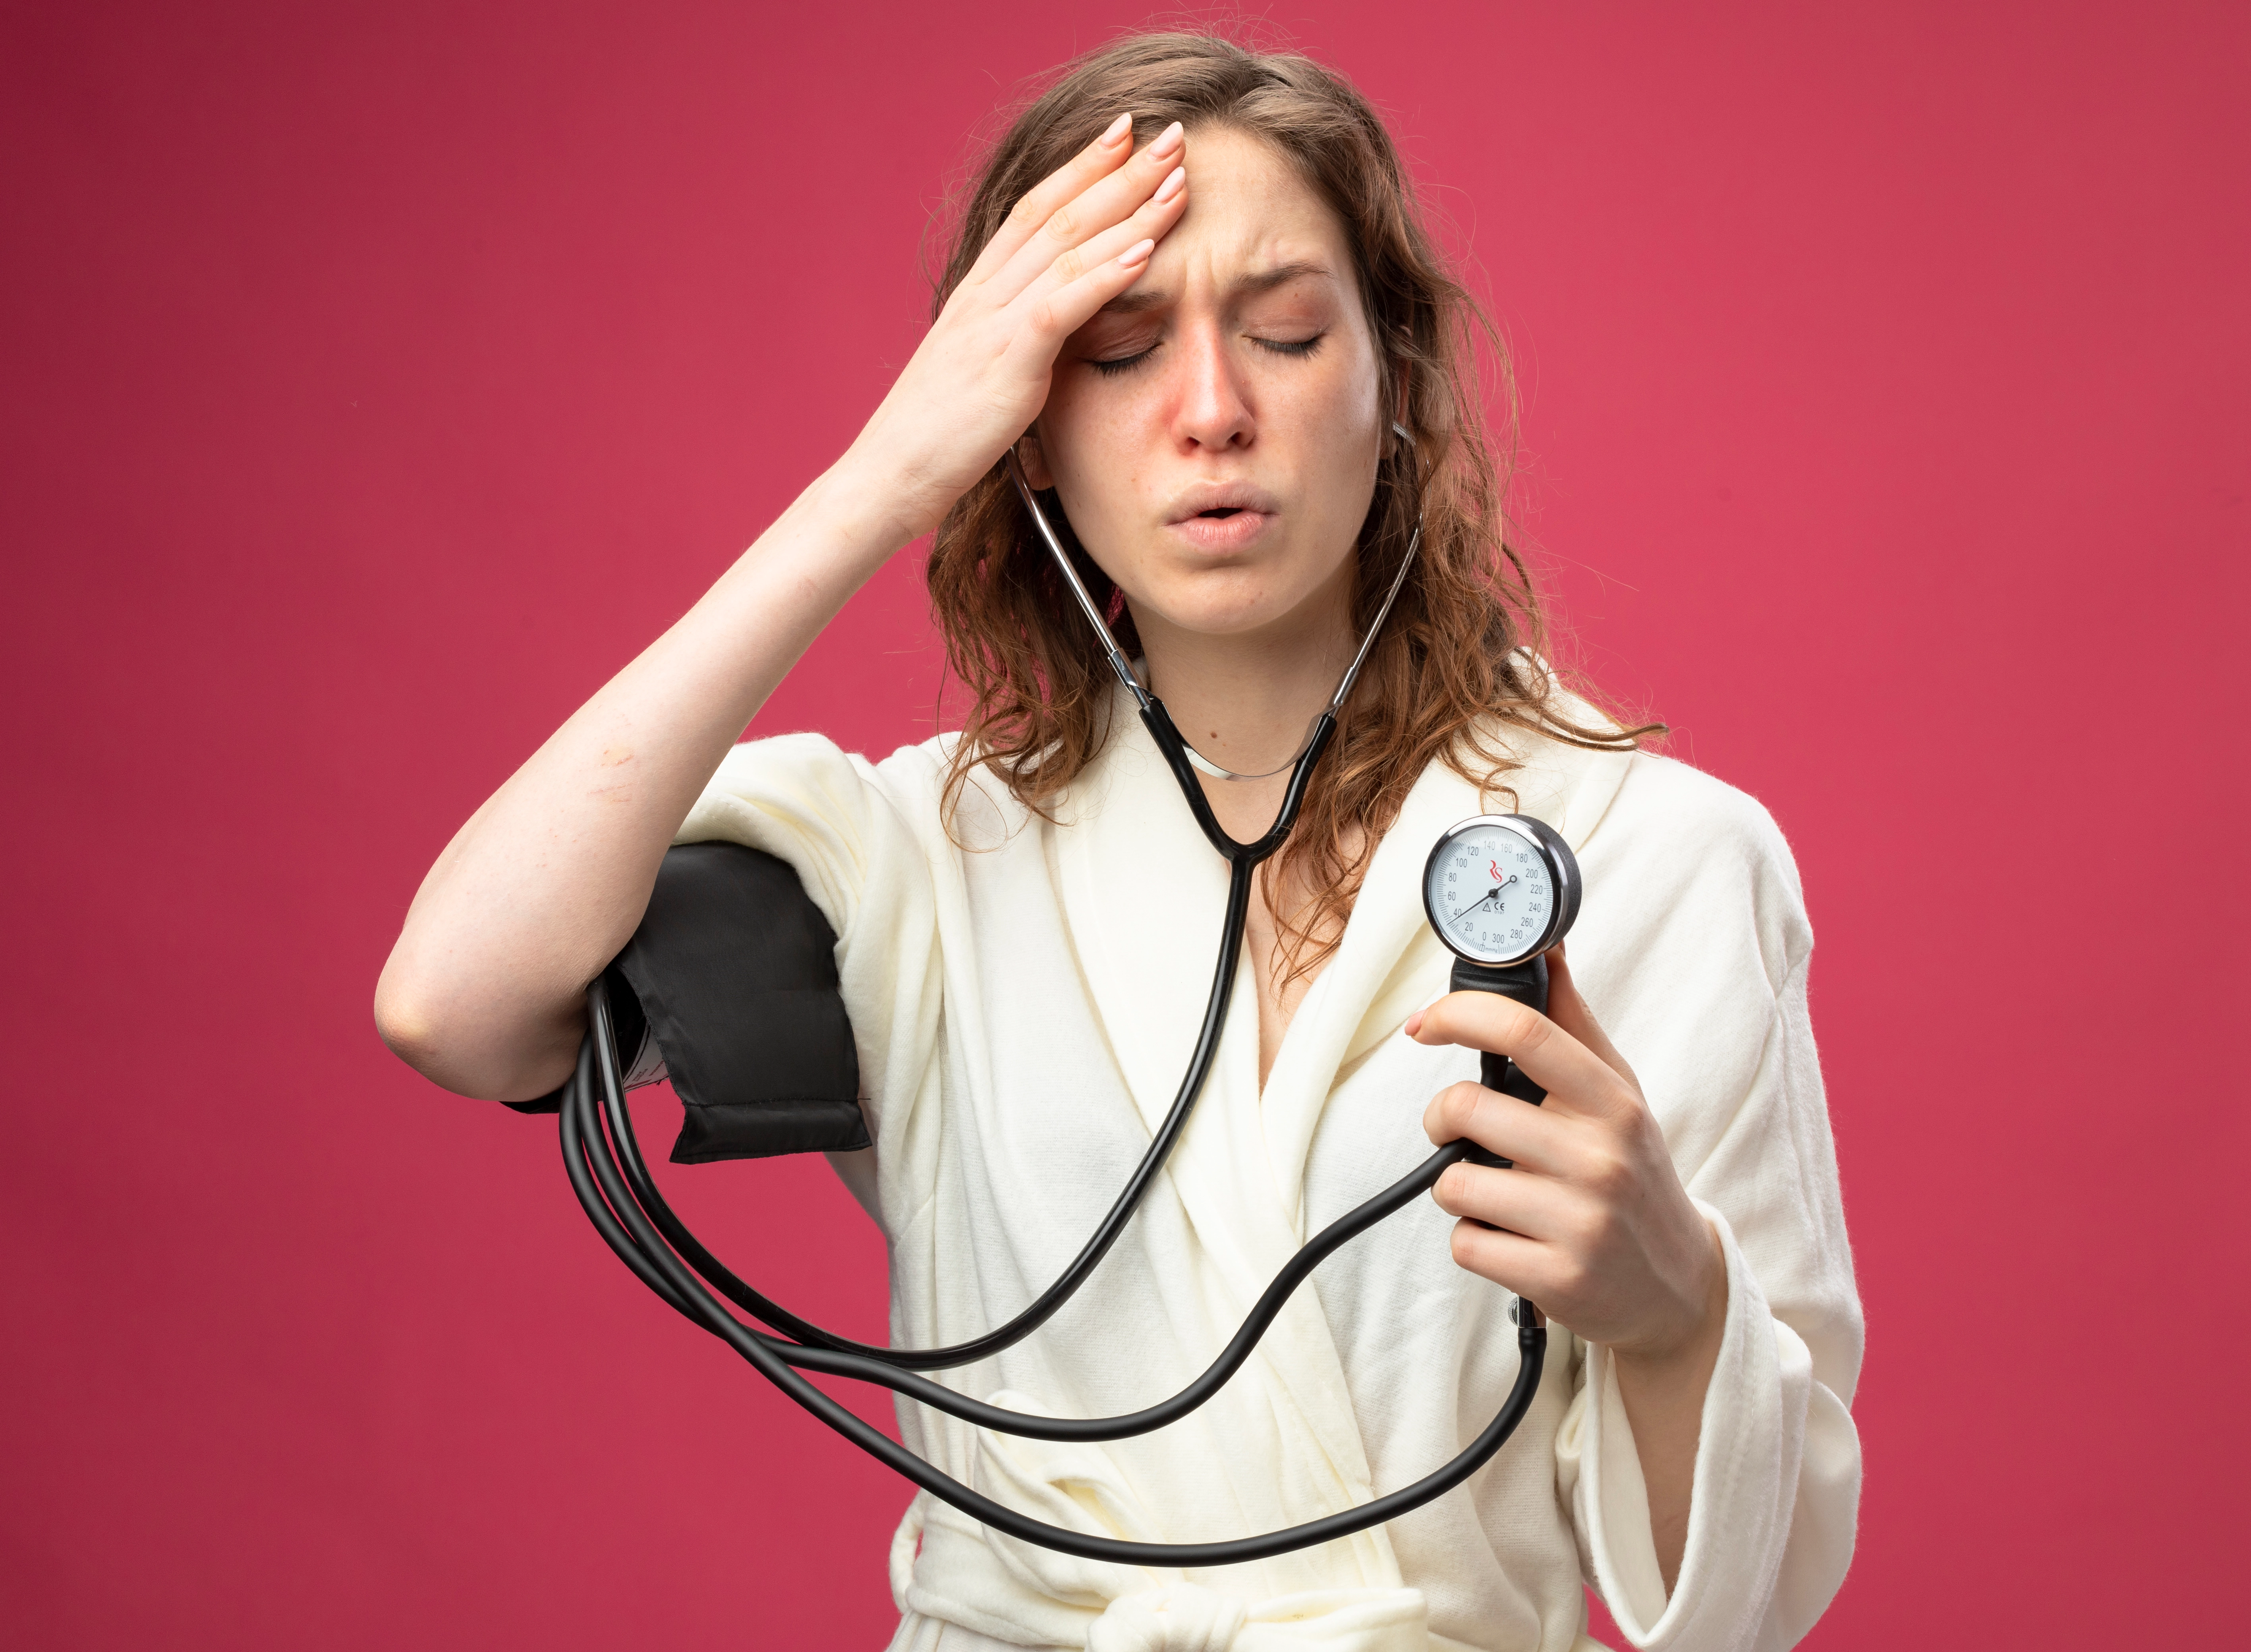 ماذا يشعر مريض ضغط الدم؟